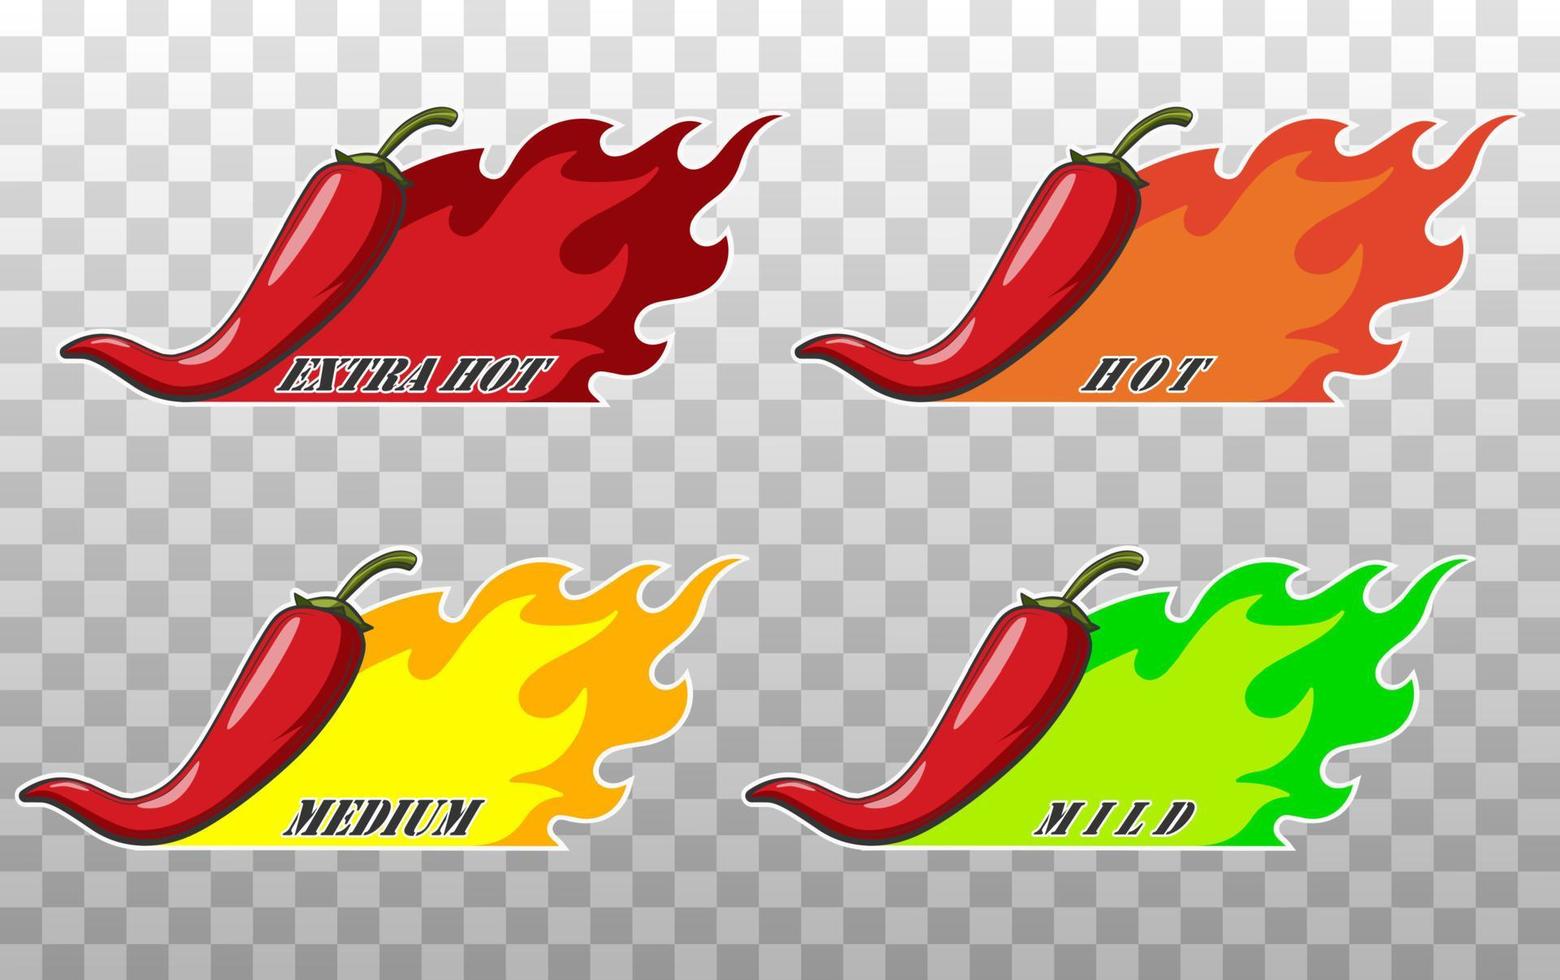 pictogrammen met chili peper kruiden niveaus. hete peper bord met vuurvlam voor het verpakken van pittig eten. milde, medium en extra hete pepersaus stickers. vectorillustratie. vector